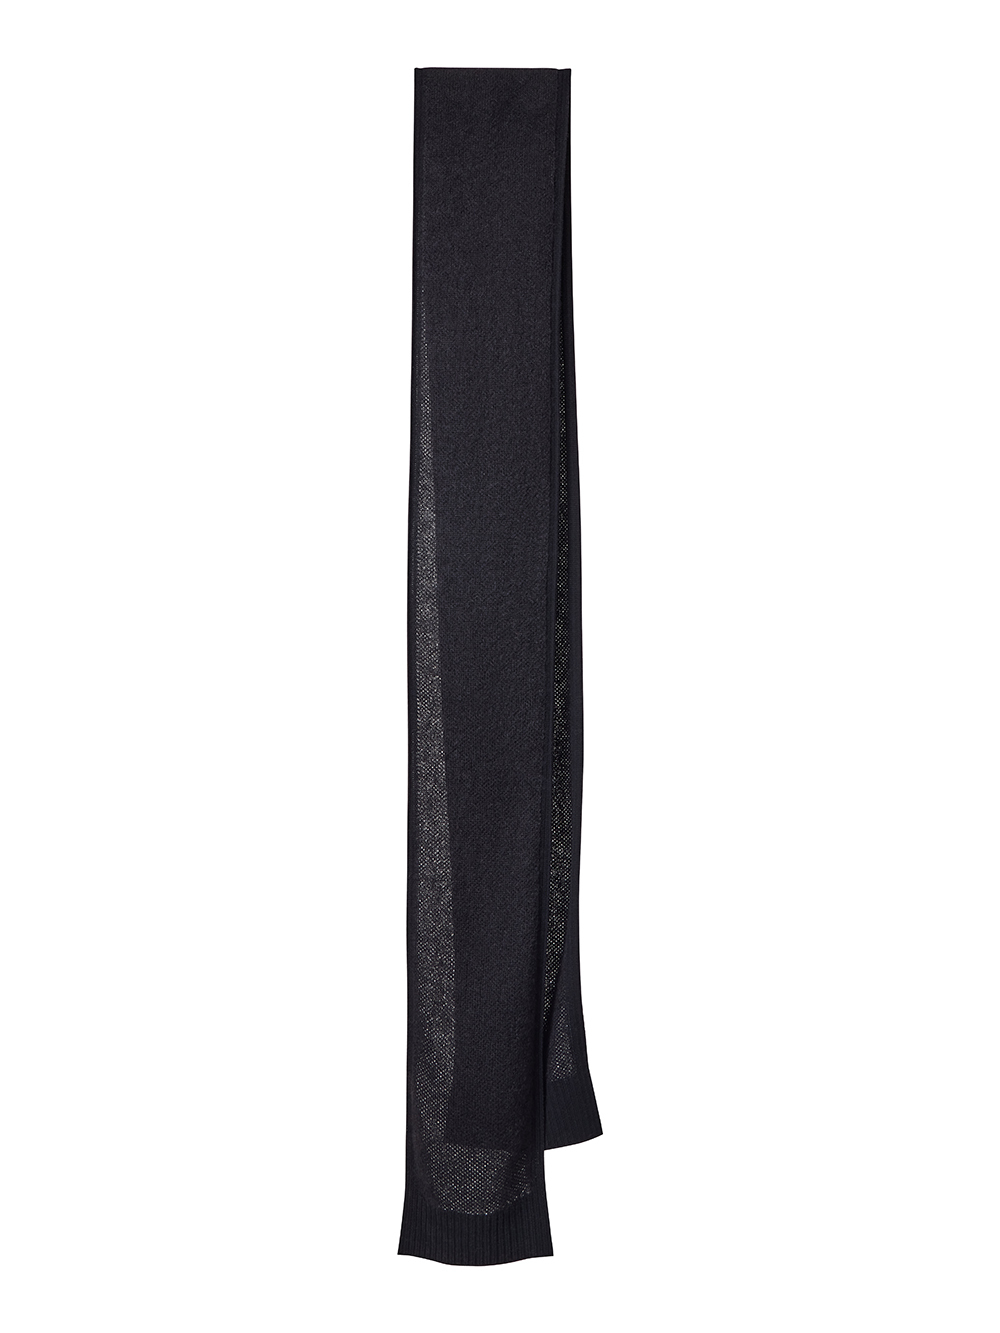 Женский шарф черного цвета из махера и кашемира - фото 1